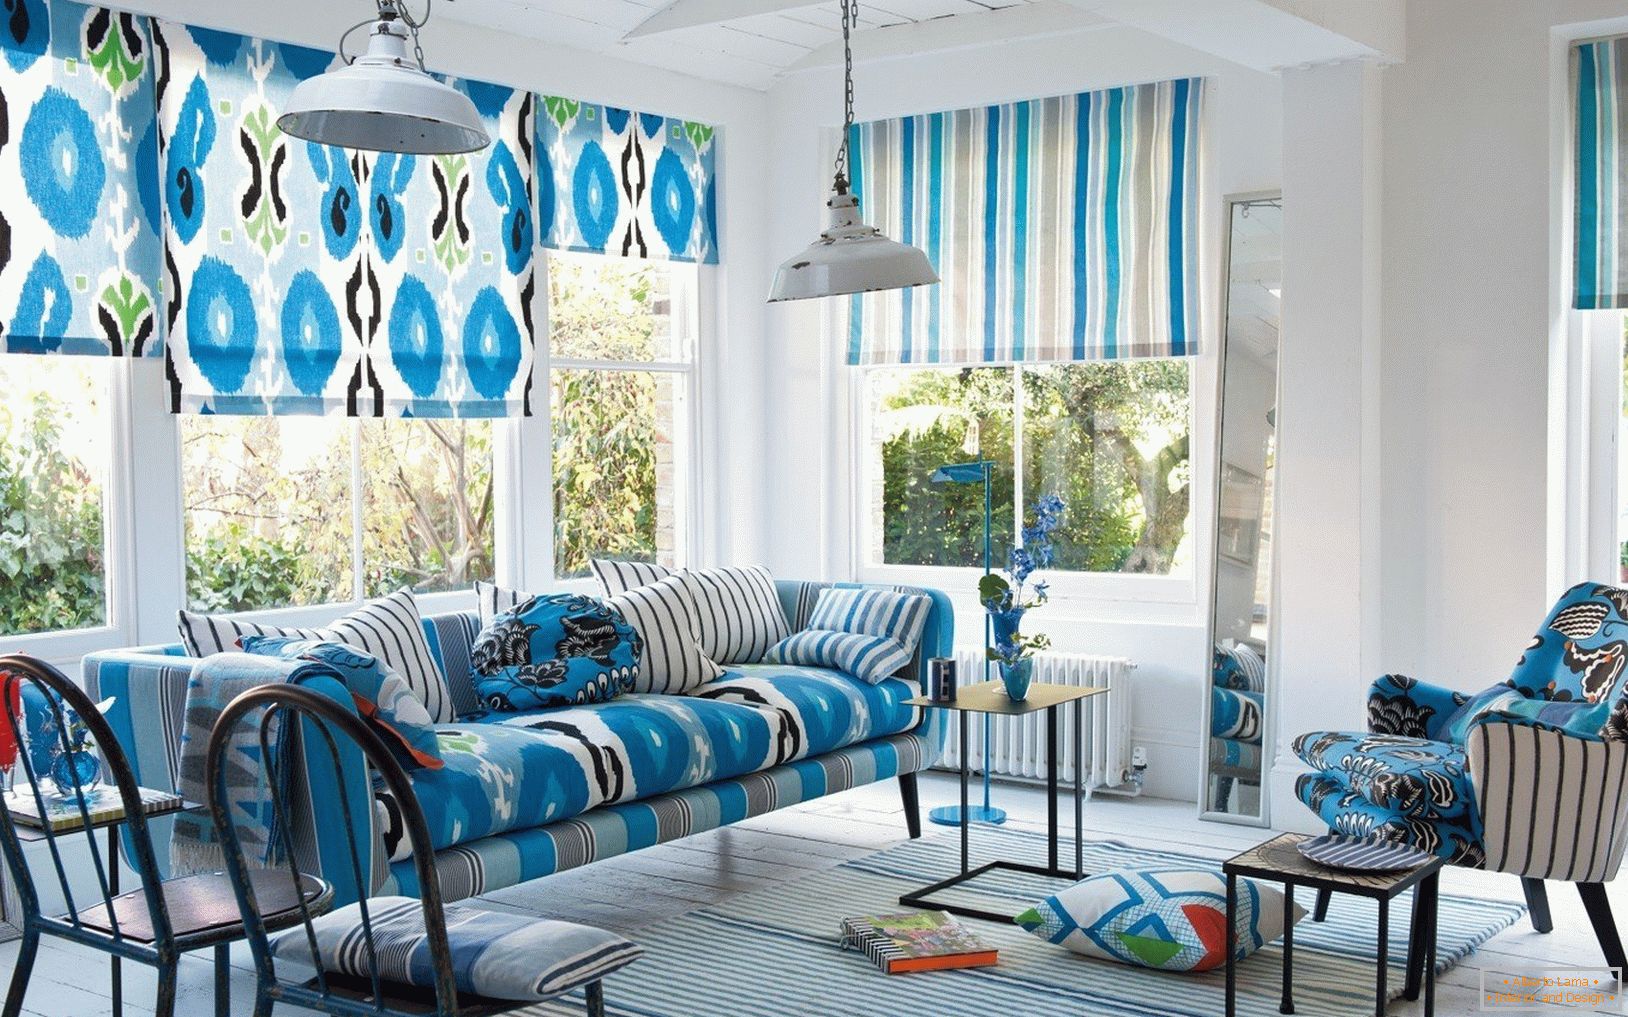 Cortinas y muebles con tonos de azul